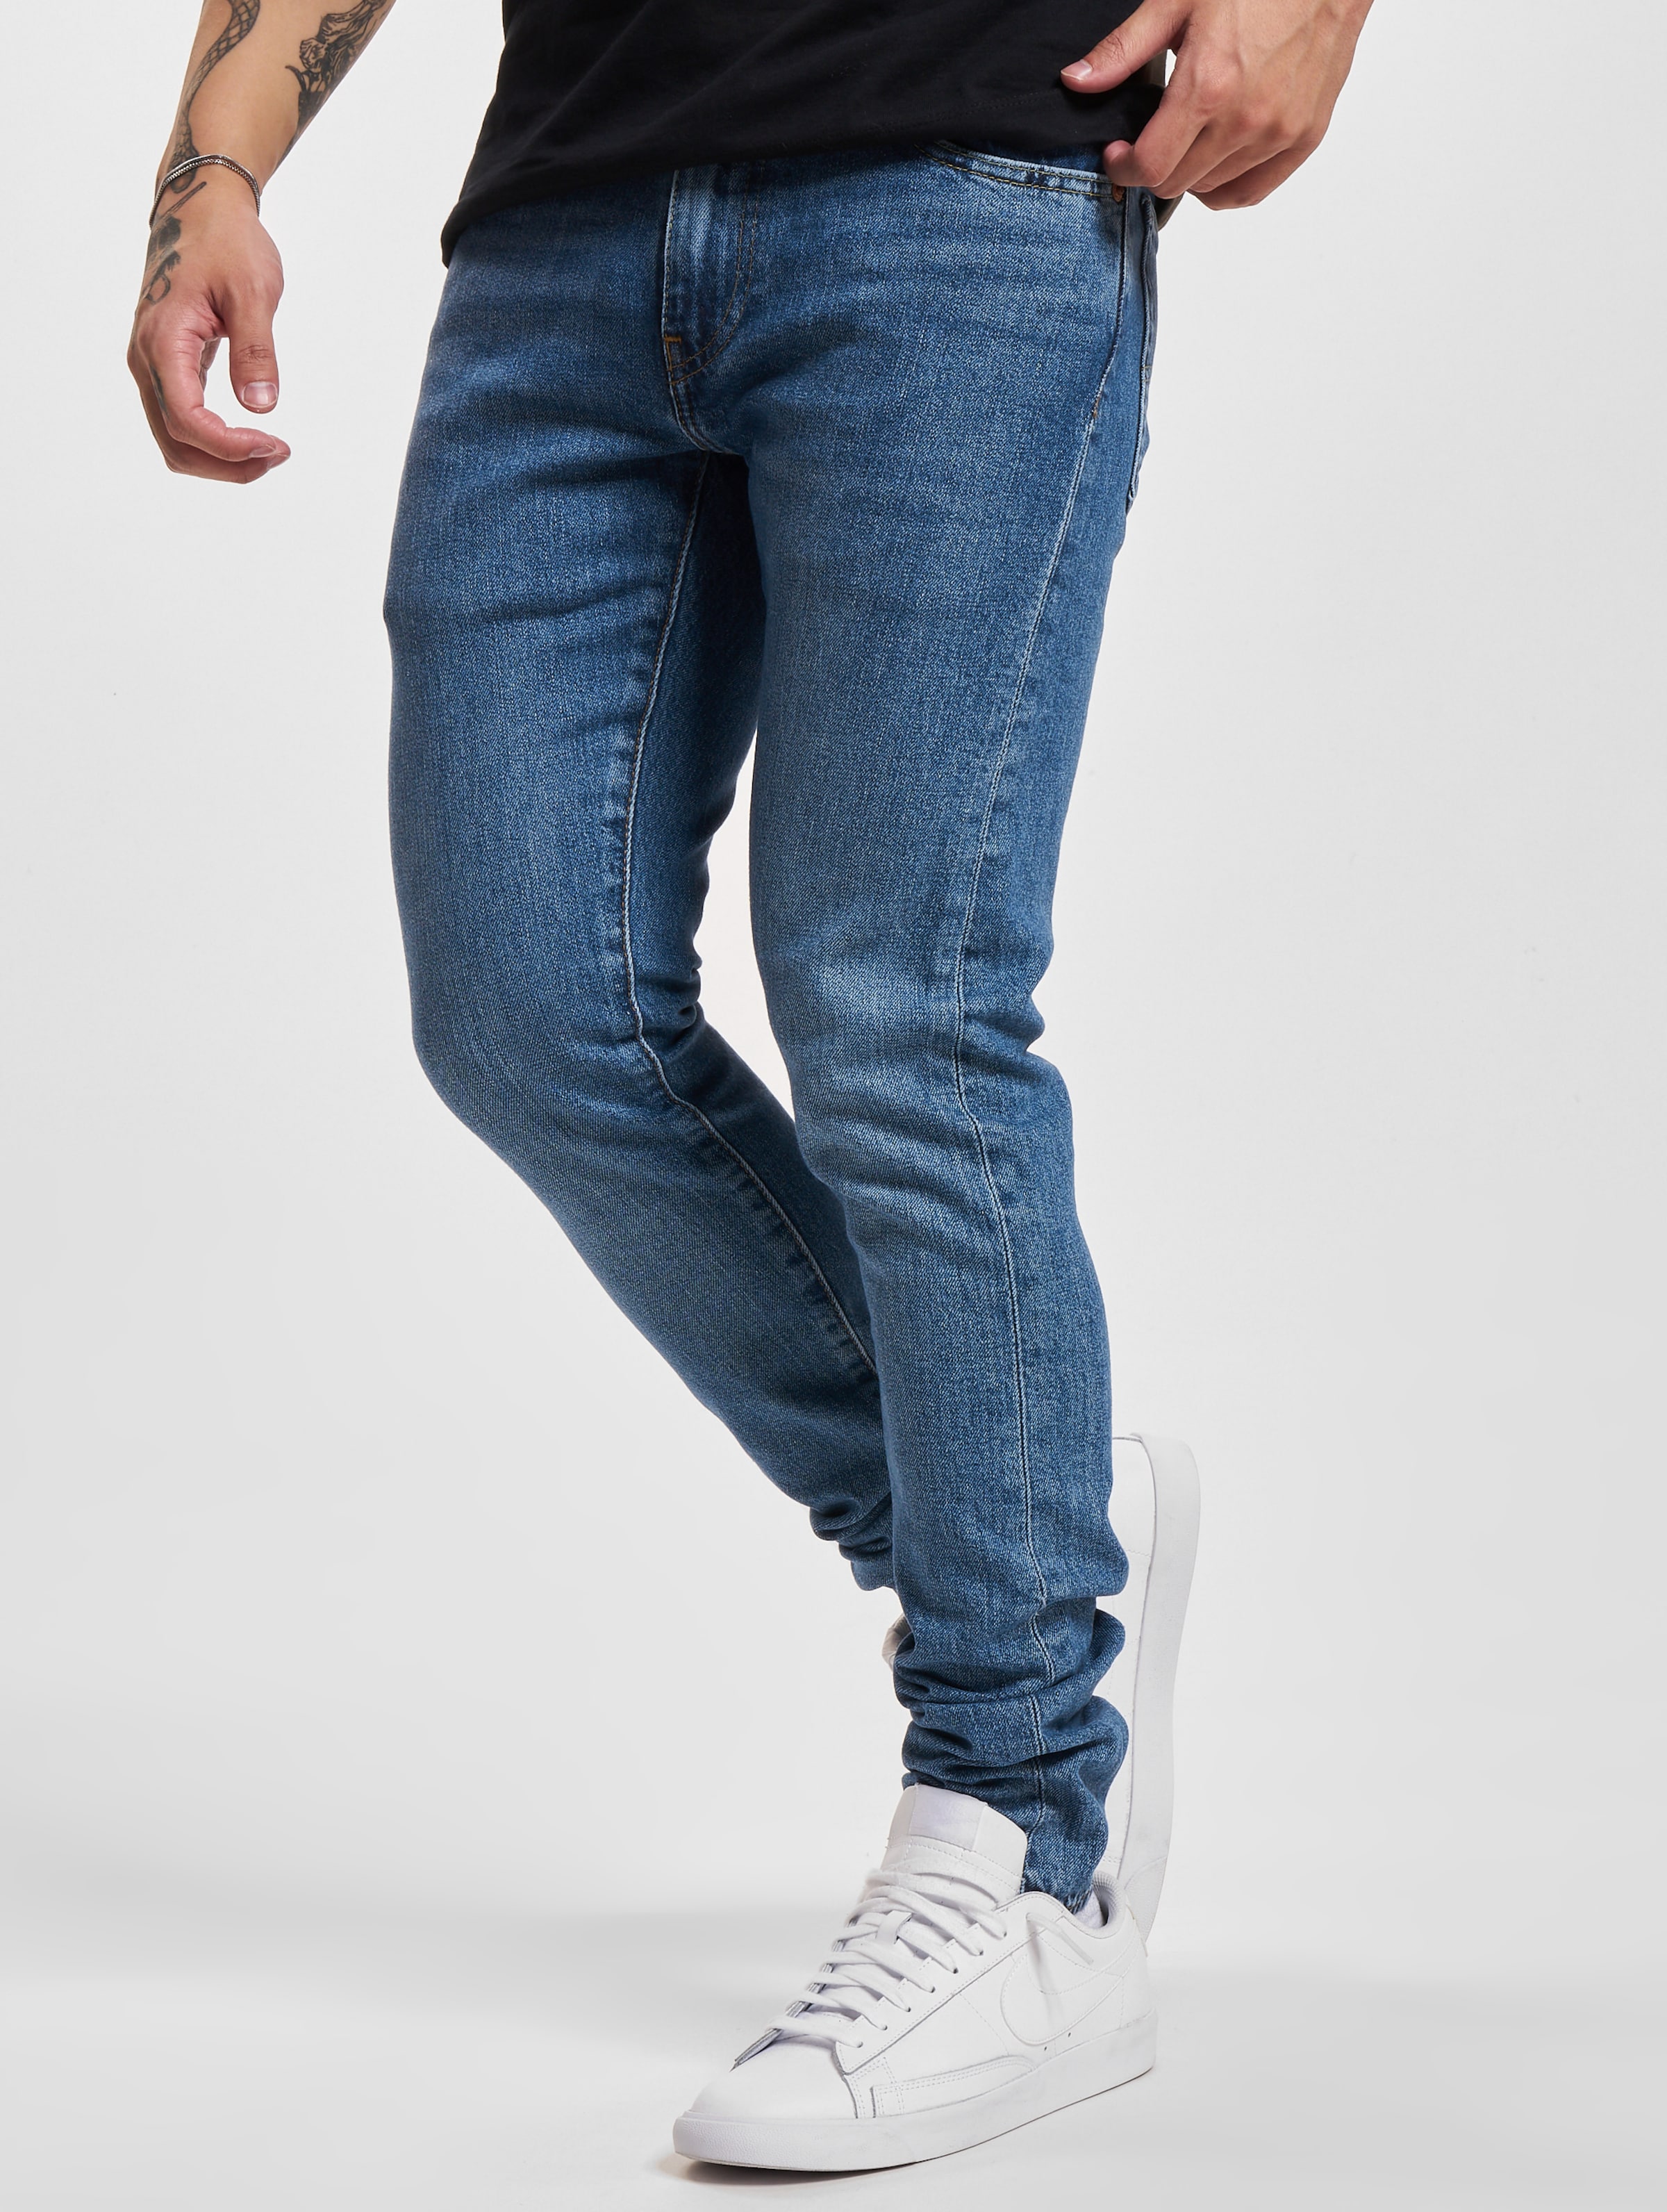 Levi's Levis Skinny Taper Jeans Mannen op kleur blauw, Maat 3032